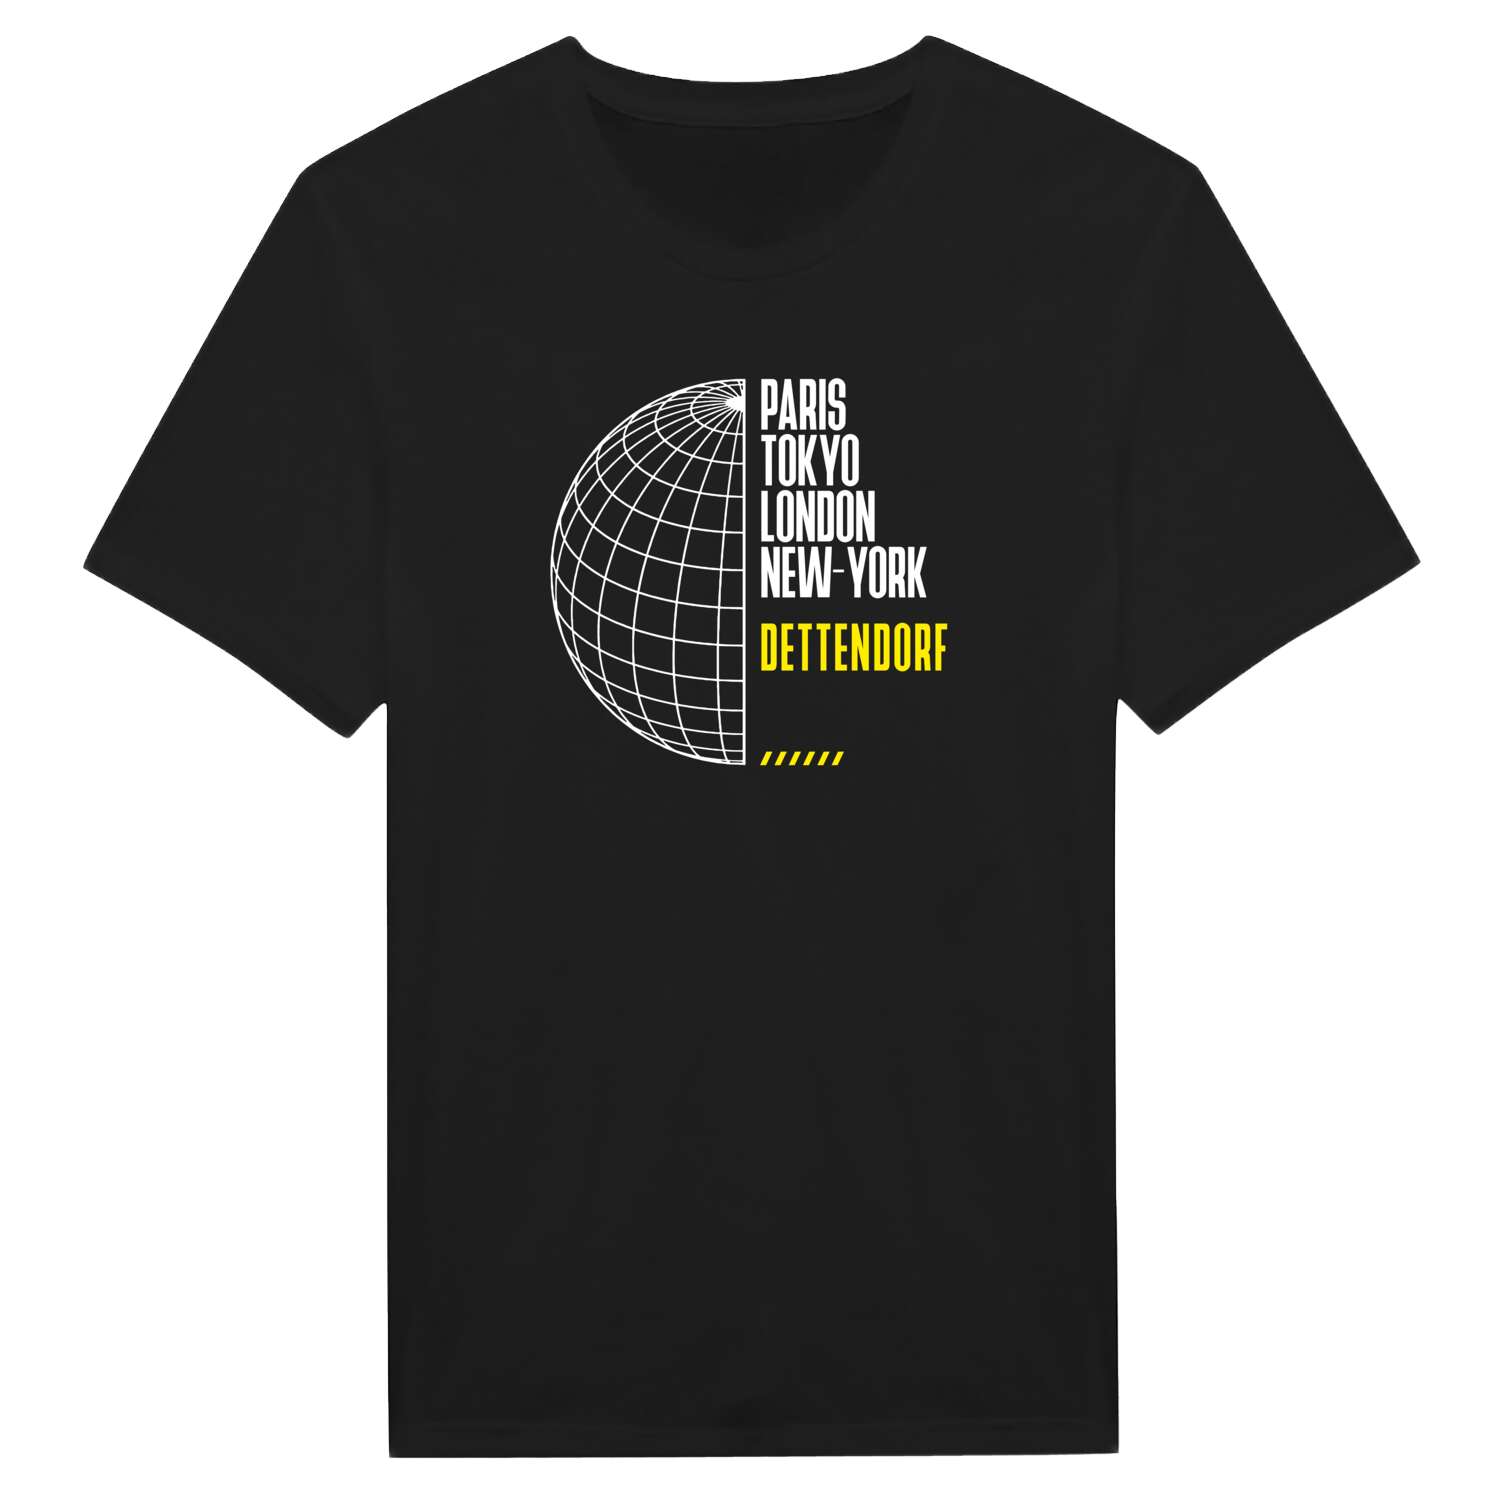 Dettendorf T-Shirt »Paris Tokyo London«